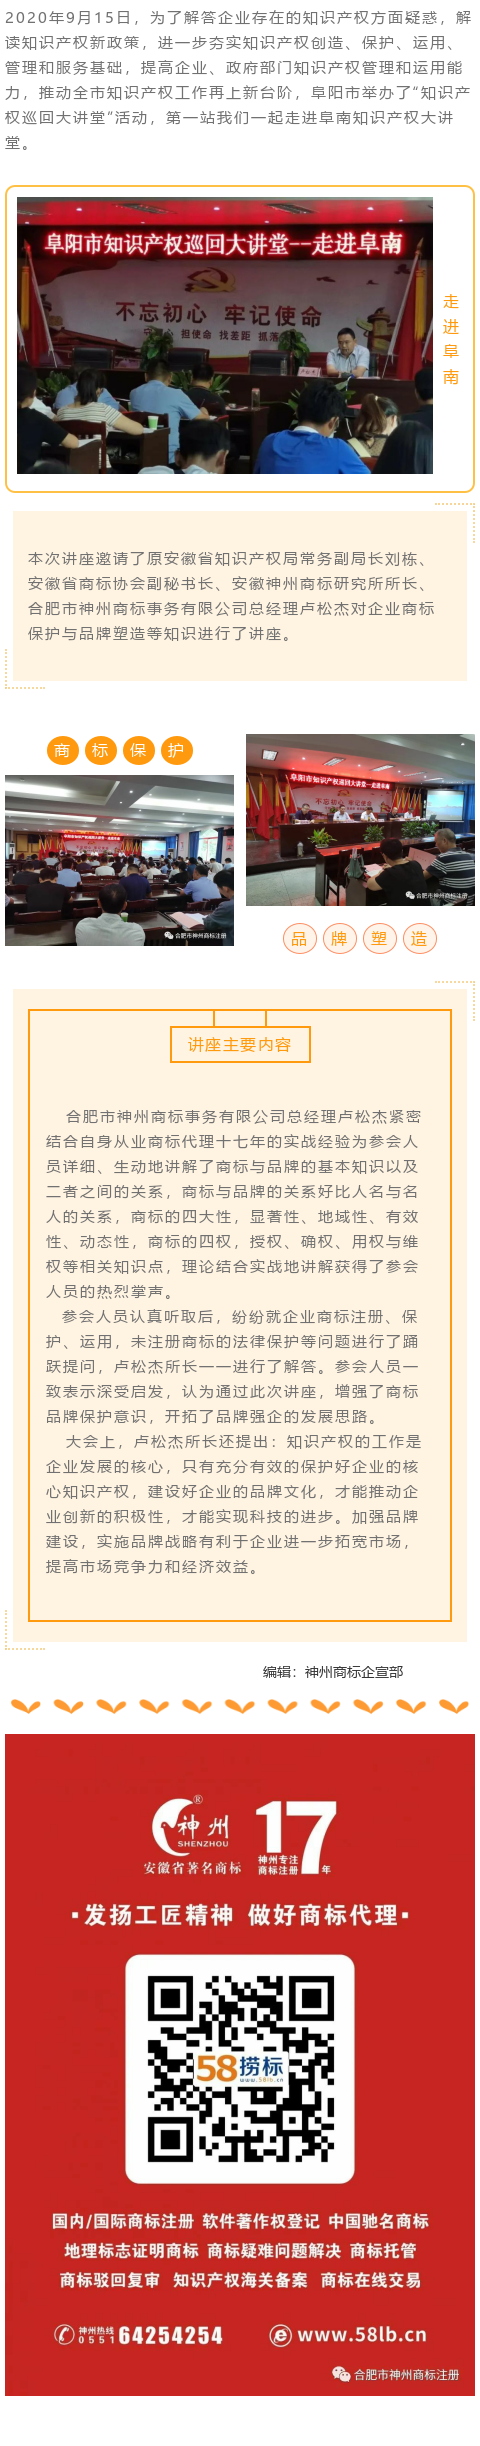 阜阳市举办知识产权巡回大讲堂——第一站阜南